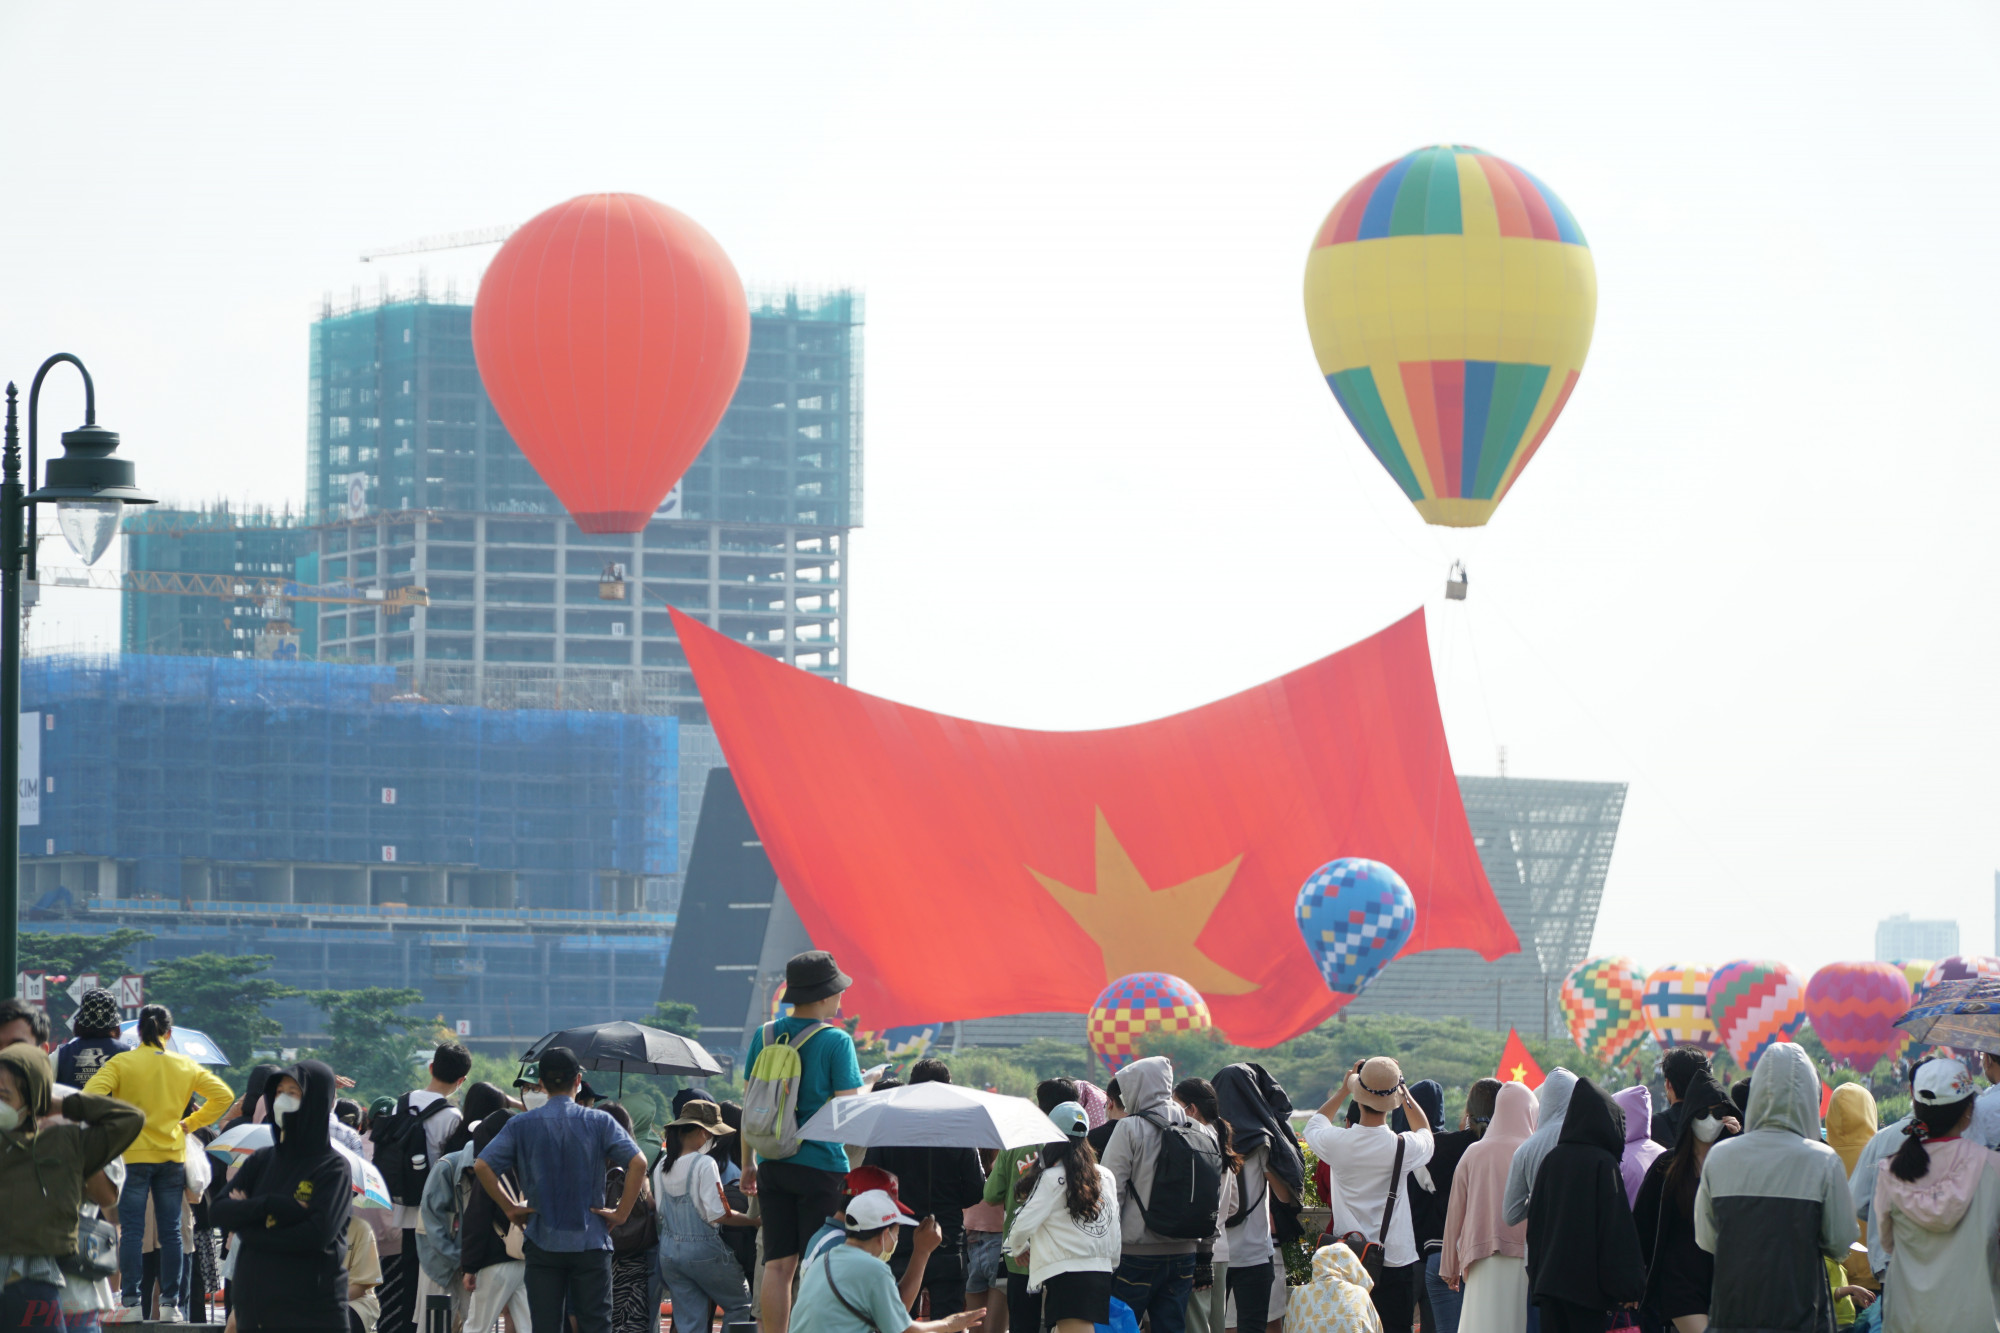 Ở phía bờ sông Sài Gòn (quận 1), hàng trăm người cũng chăm chú theo dõi quá trình đại kỳ được kéo lên cao.